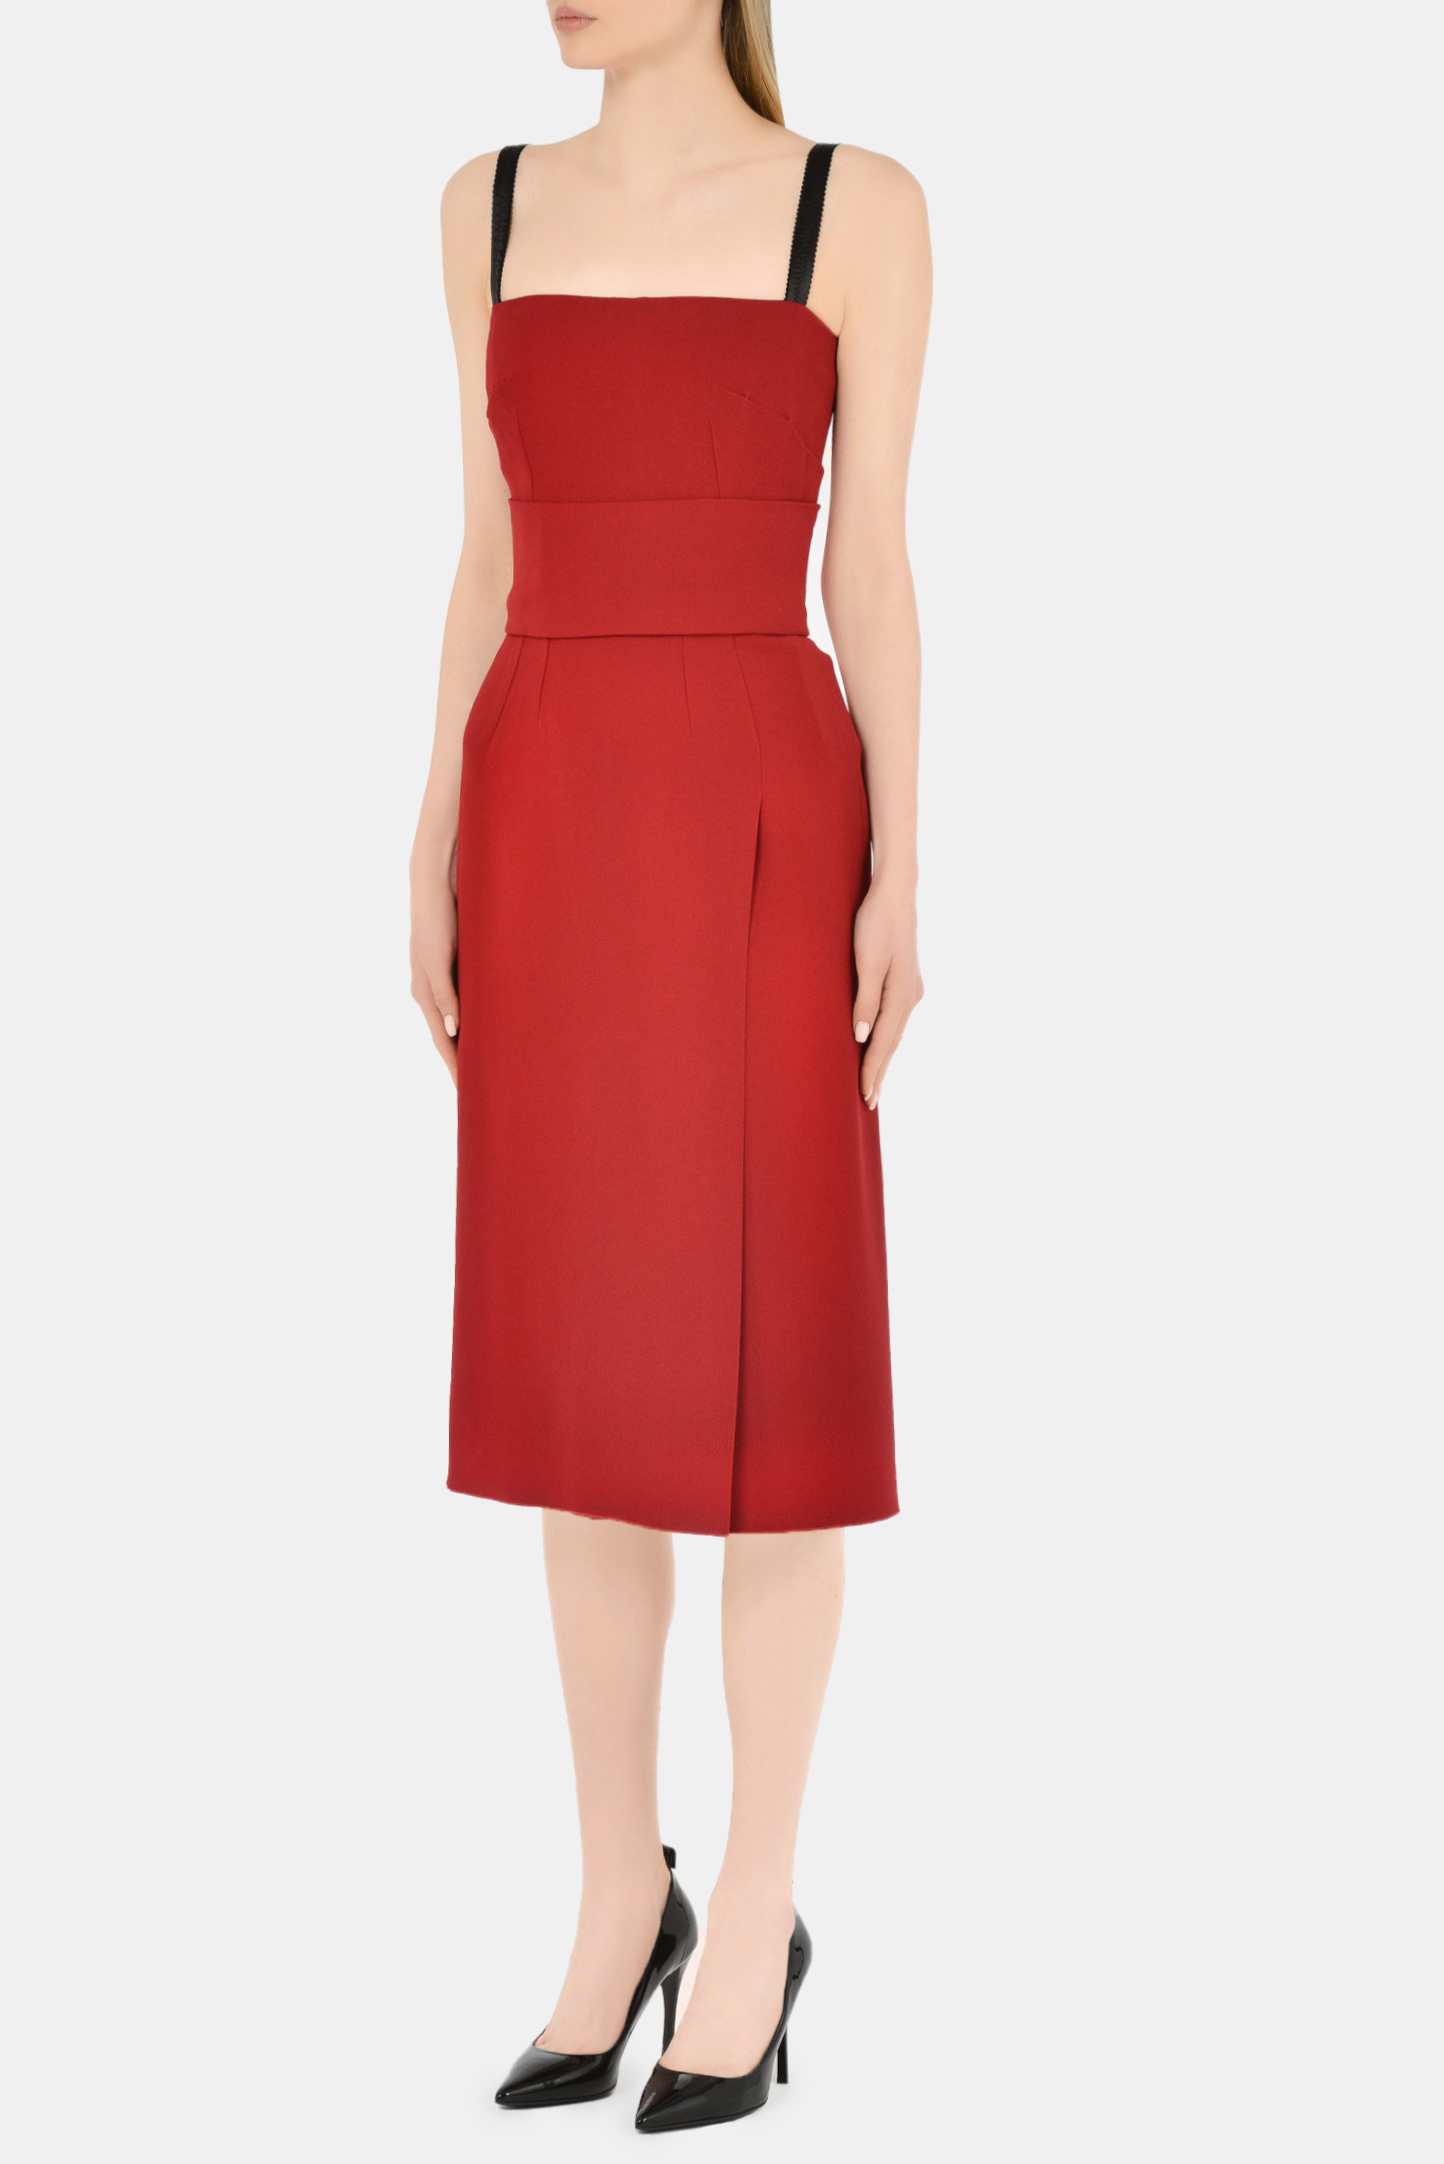 Платье DOLCE & GABBANA F6P0IT FURDV, цвет: Бордовый, Женский